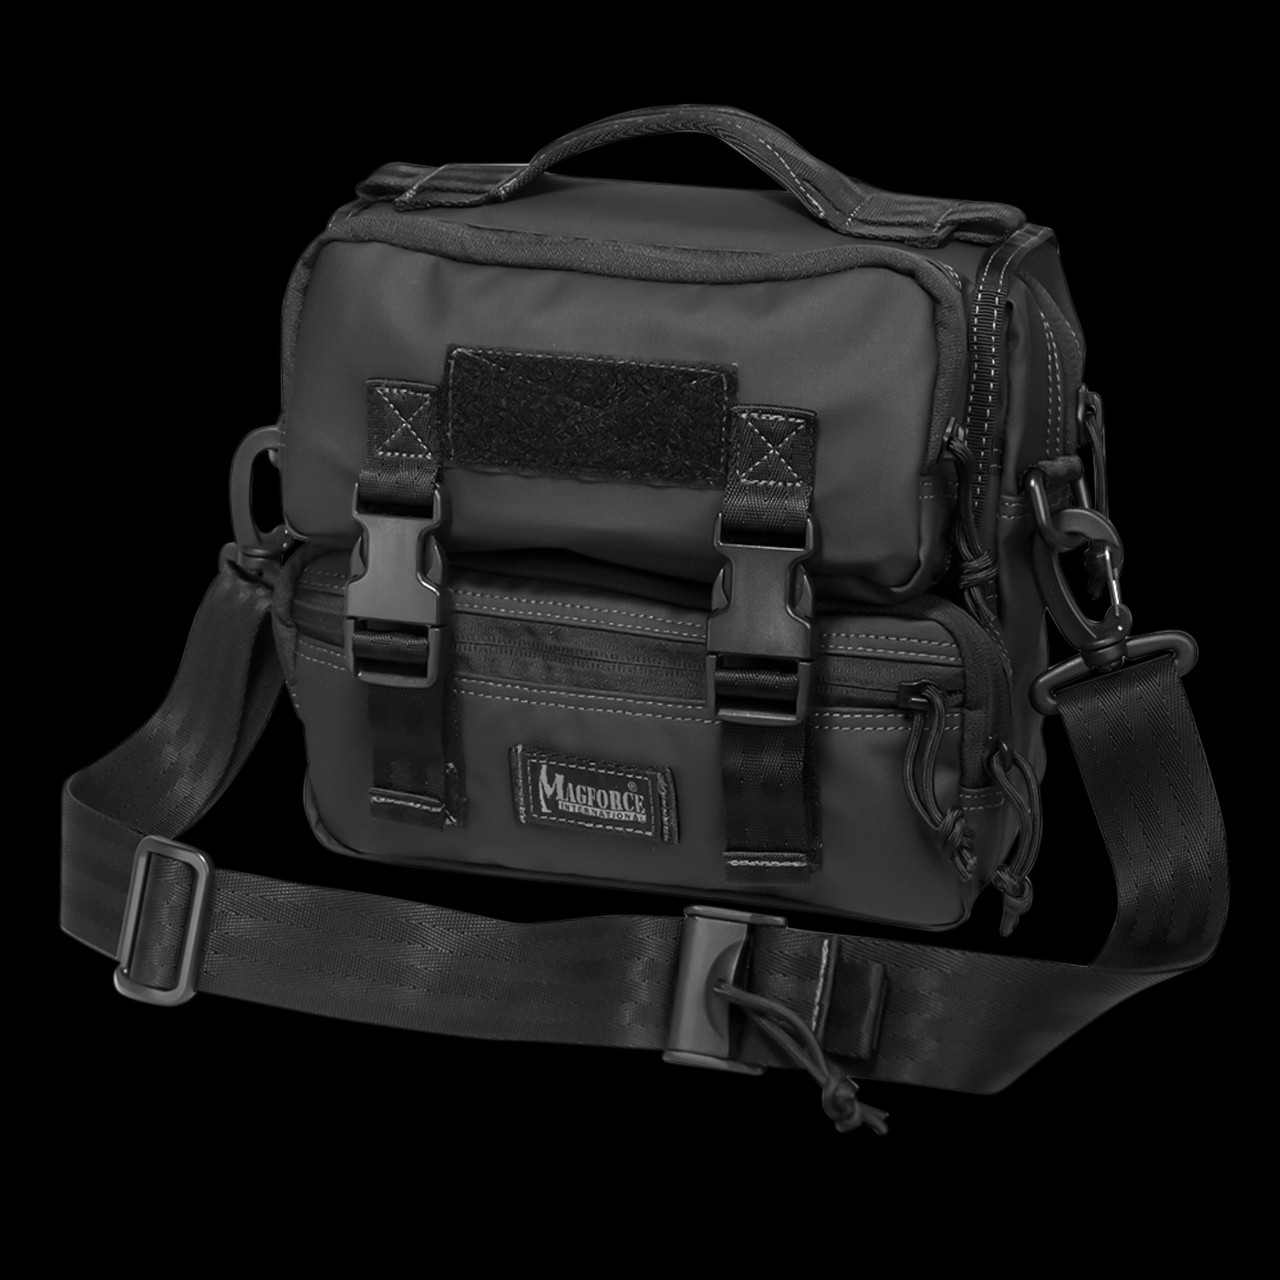 Survivor One Shoulder Bag, Multi Pocket